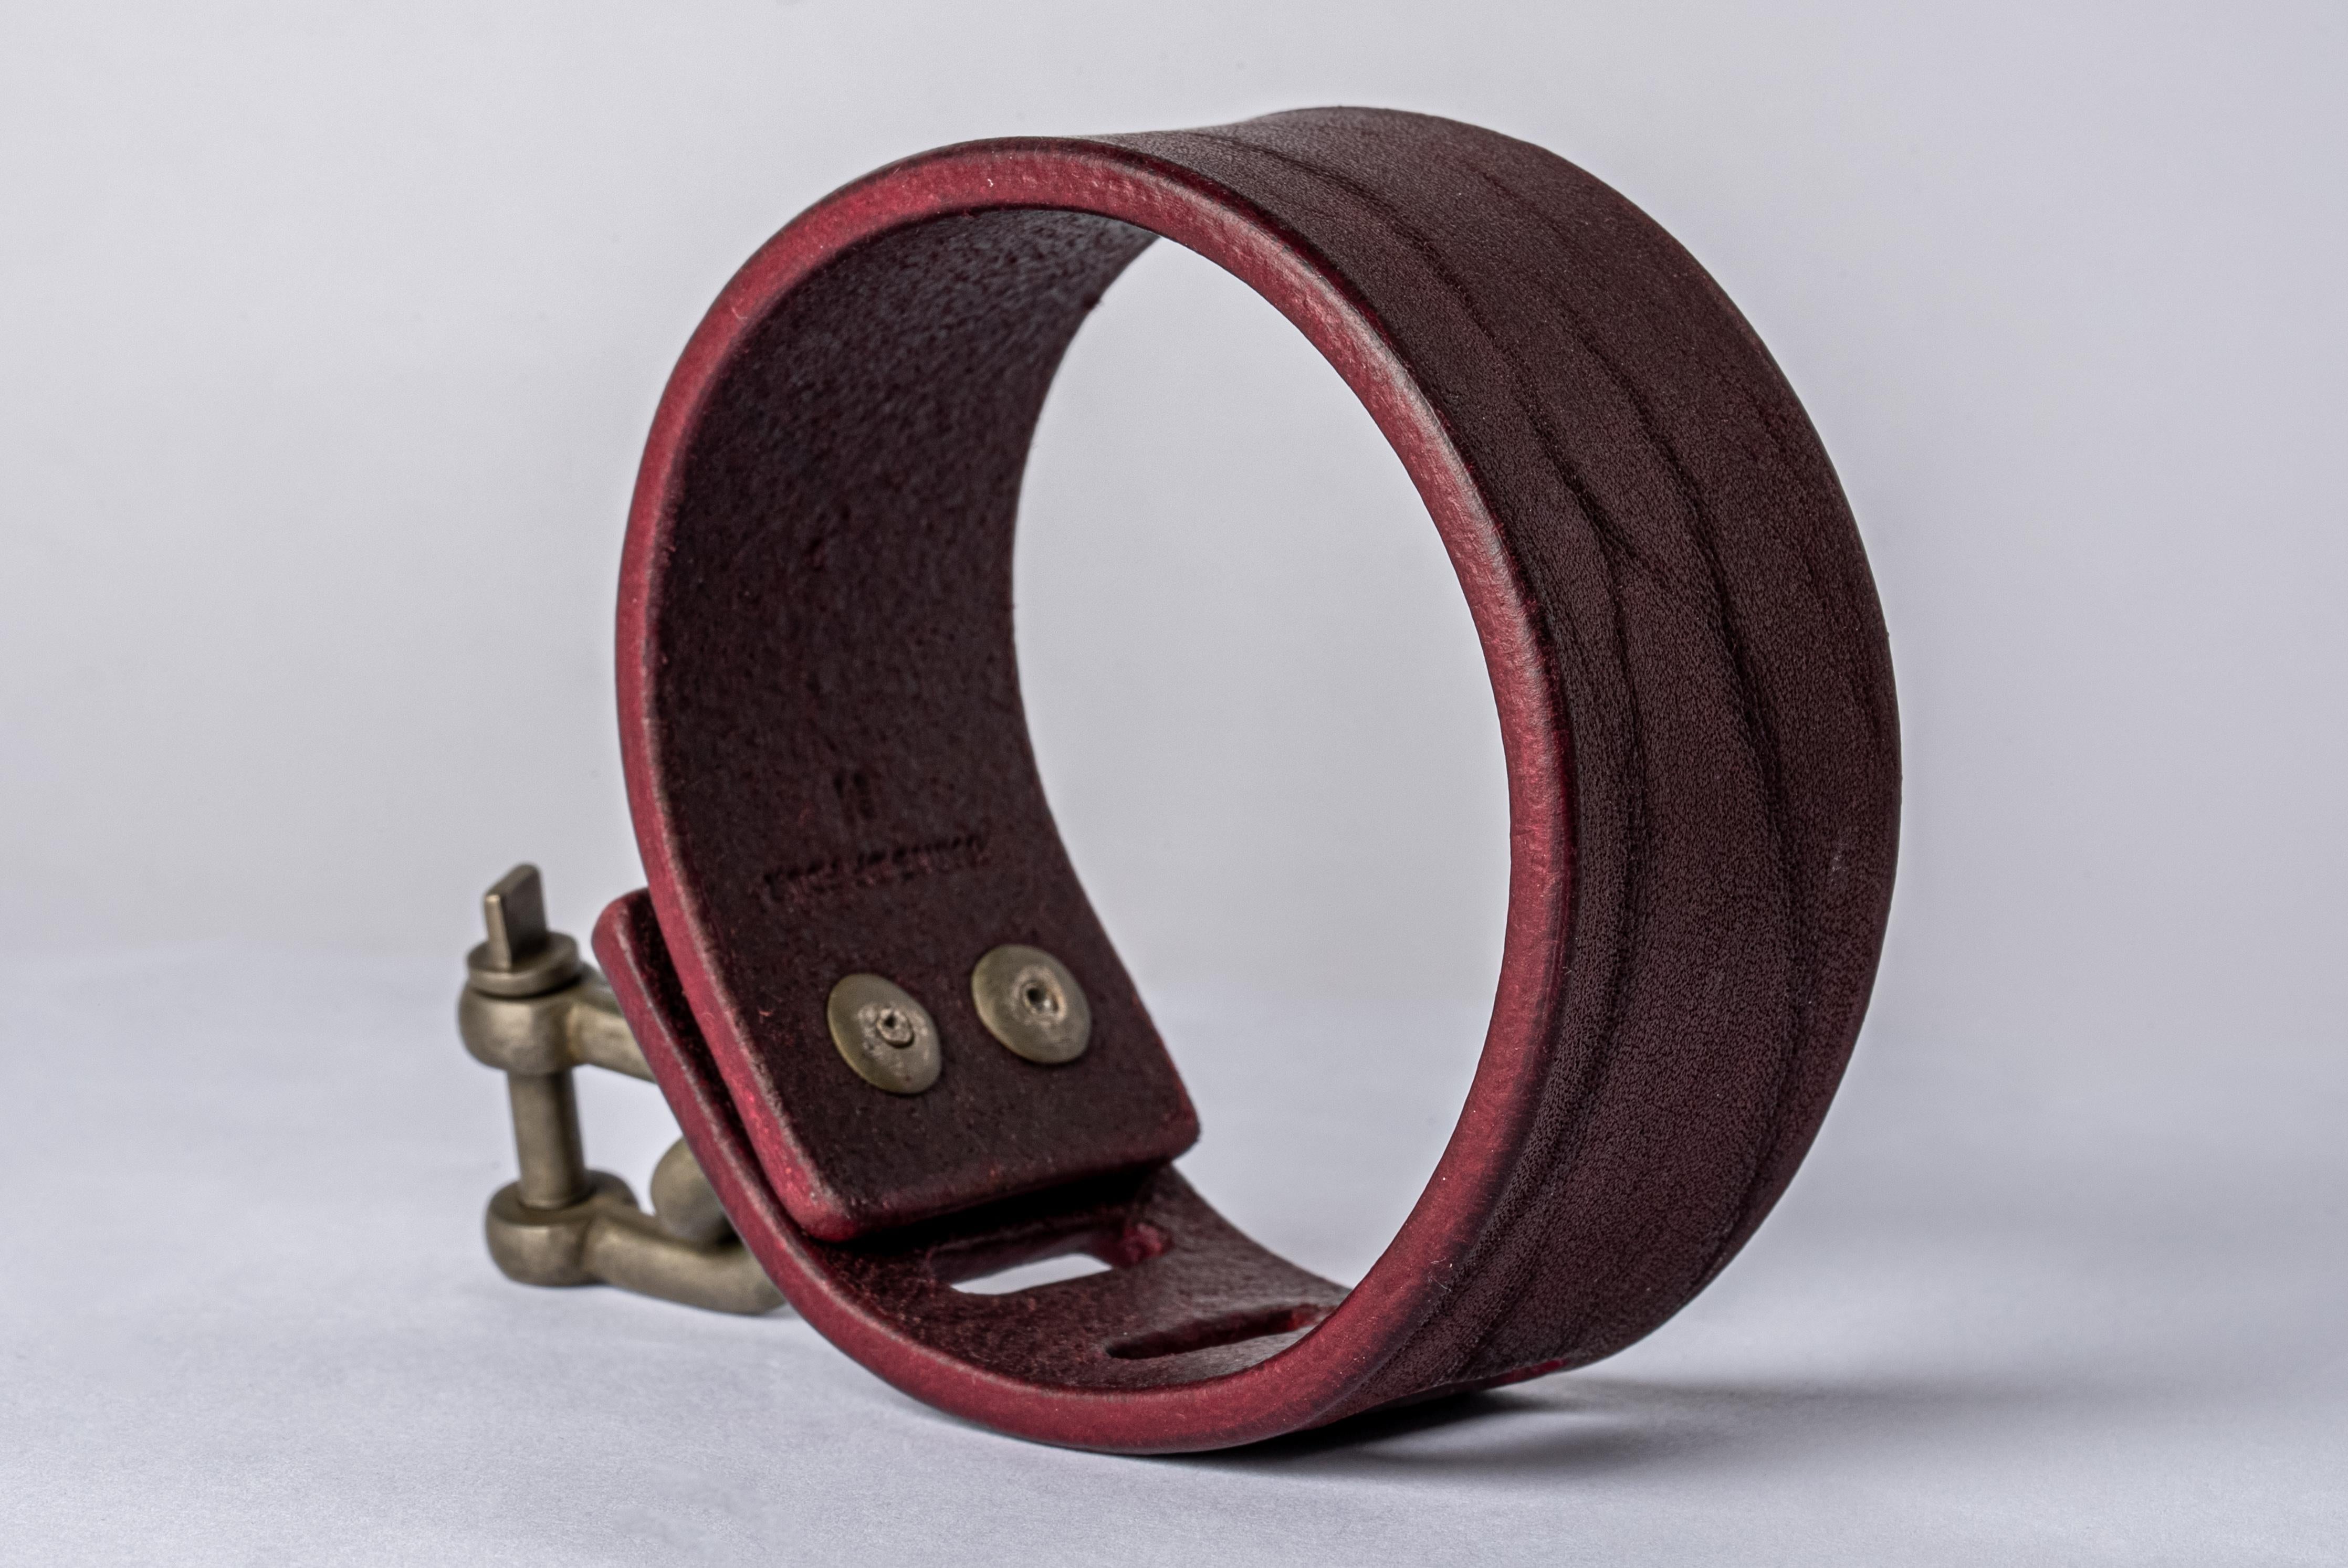 Armband aus Weinbüffelleder und schmutzigweißer Bronze. Gegenstände, die als Fesseln verwendet werden können. Die gesamte P4X-Hardware und das Zubehör sind kompatibel und austauschbar. Das Charm System ist eine zusammenhängende Gruppe von Produkten,